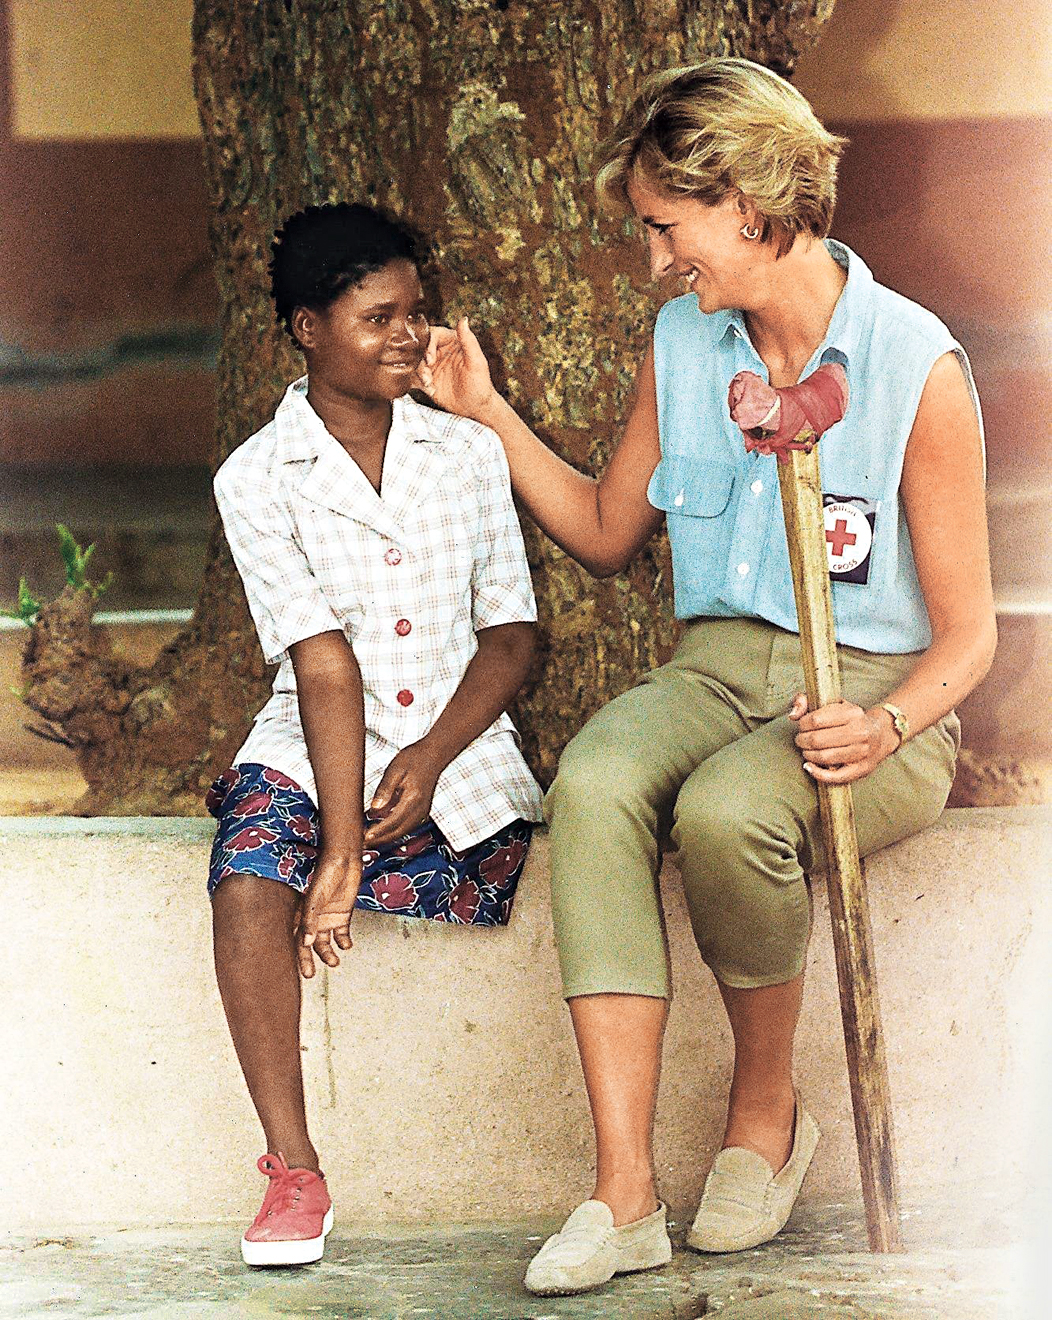 Princess Diana Angola Visit July 1997 Princess Diana meets a victim of landmines in Angola.